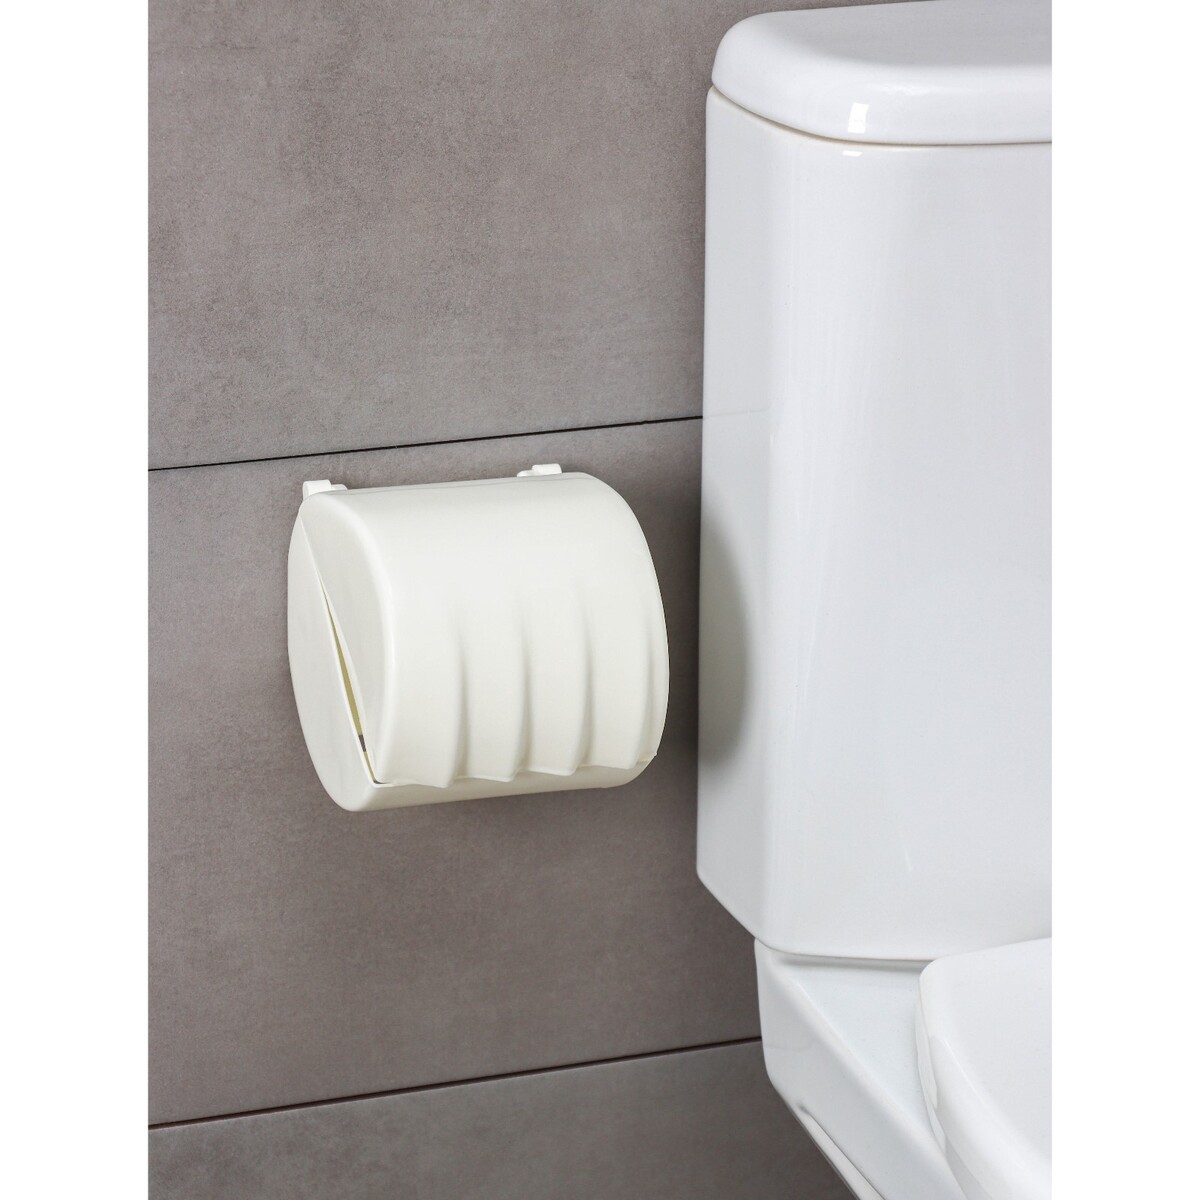 Держатель для туалетной бумаги regular, 15,5×12,2×13,5 см, цвет белое облако держатель для туалетной бумаги с крышкой штольц stölz